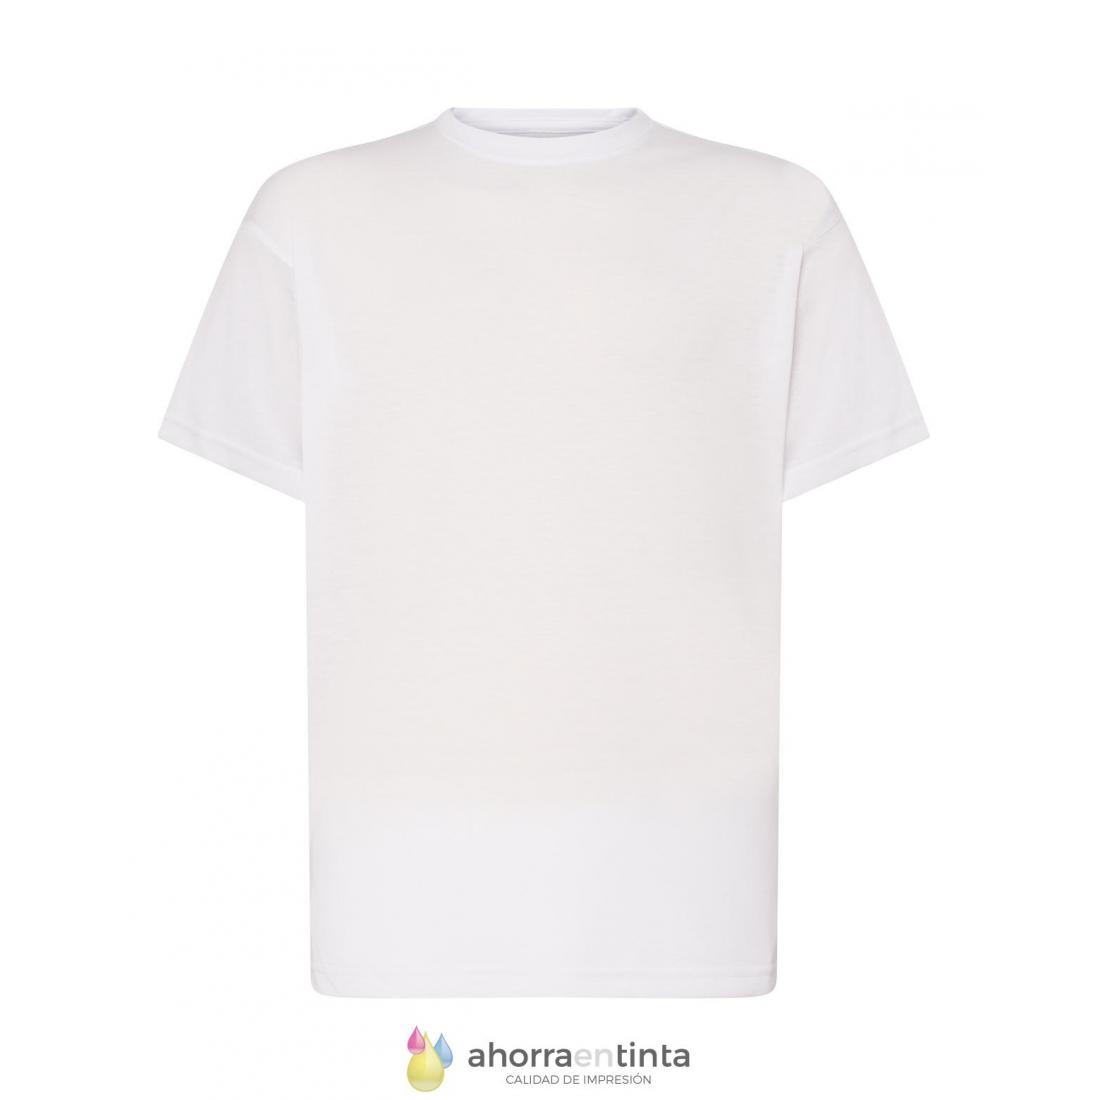 Monet Río arriba Cumplir Camiseta poliéster JHK blanca -TACTO ALGODÓN- Subli T-shirt HOMBRE